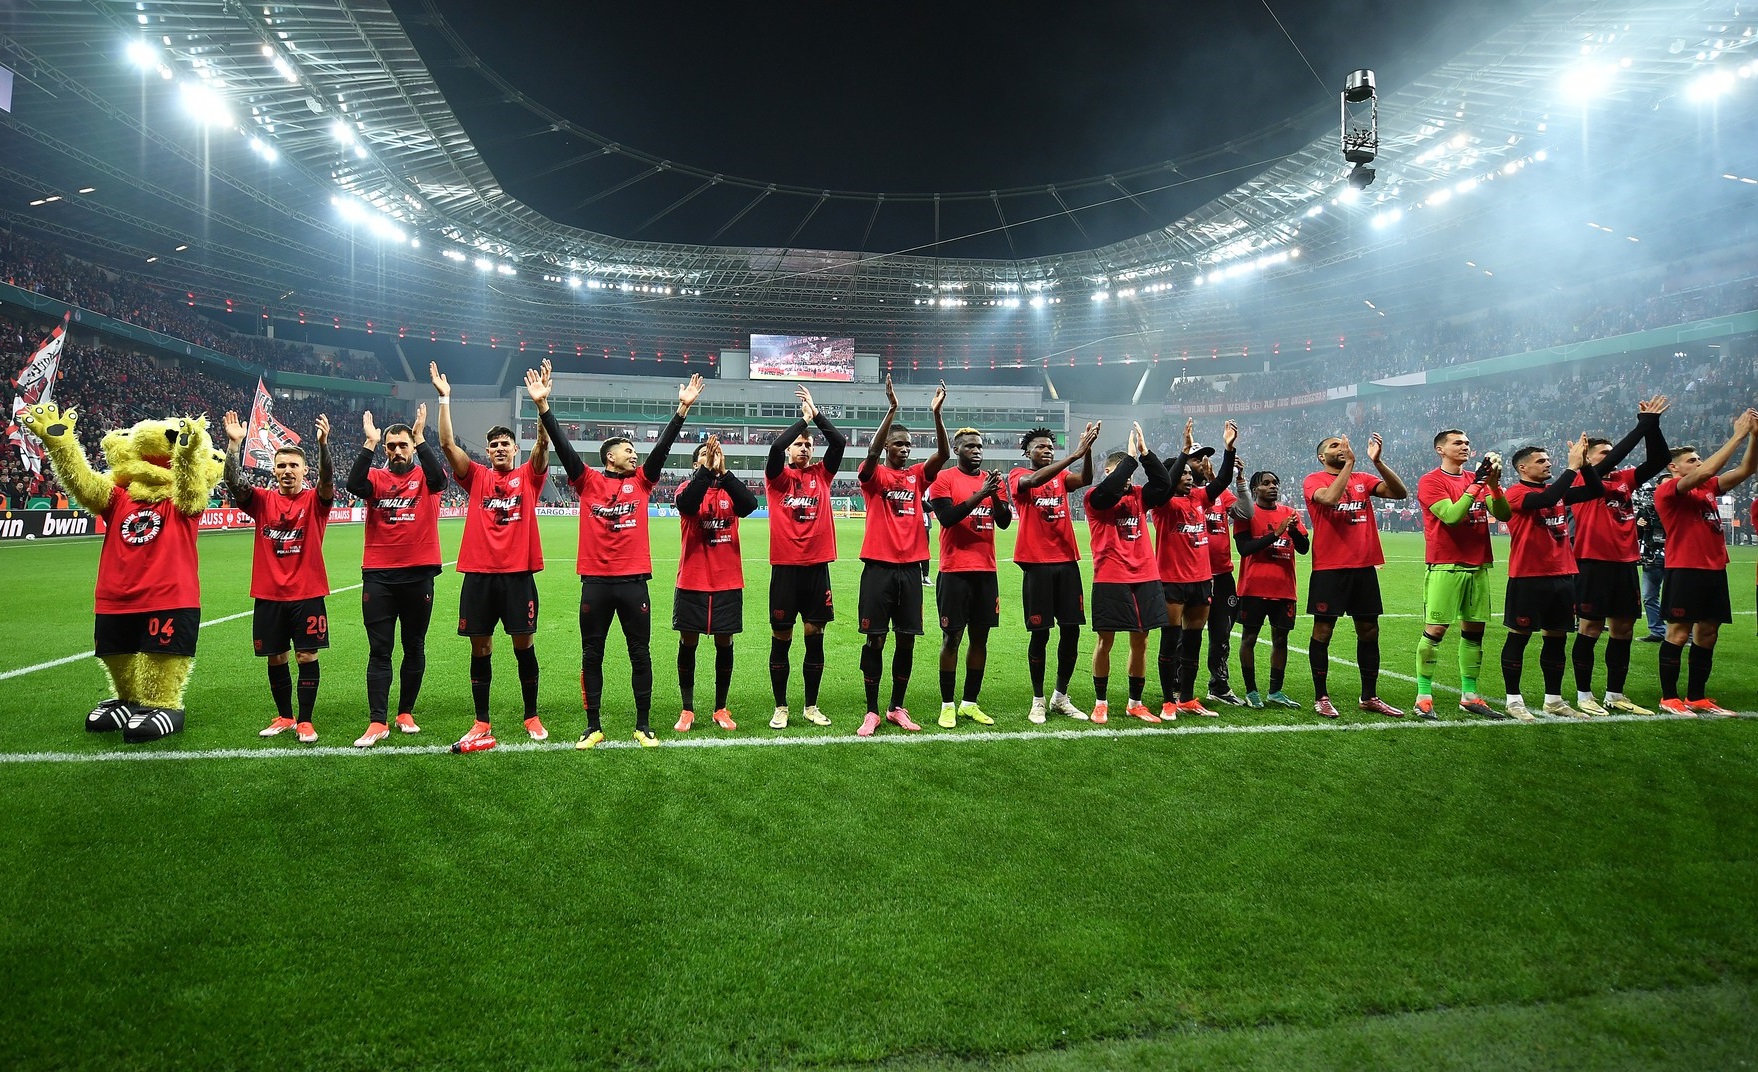 Minunea continuă: Leverkusen a ajuns la doar 3 meciuri de un record absolut în istoria fotbalului!